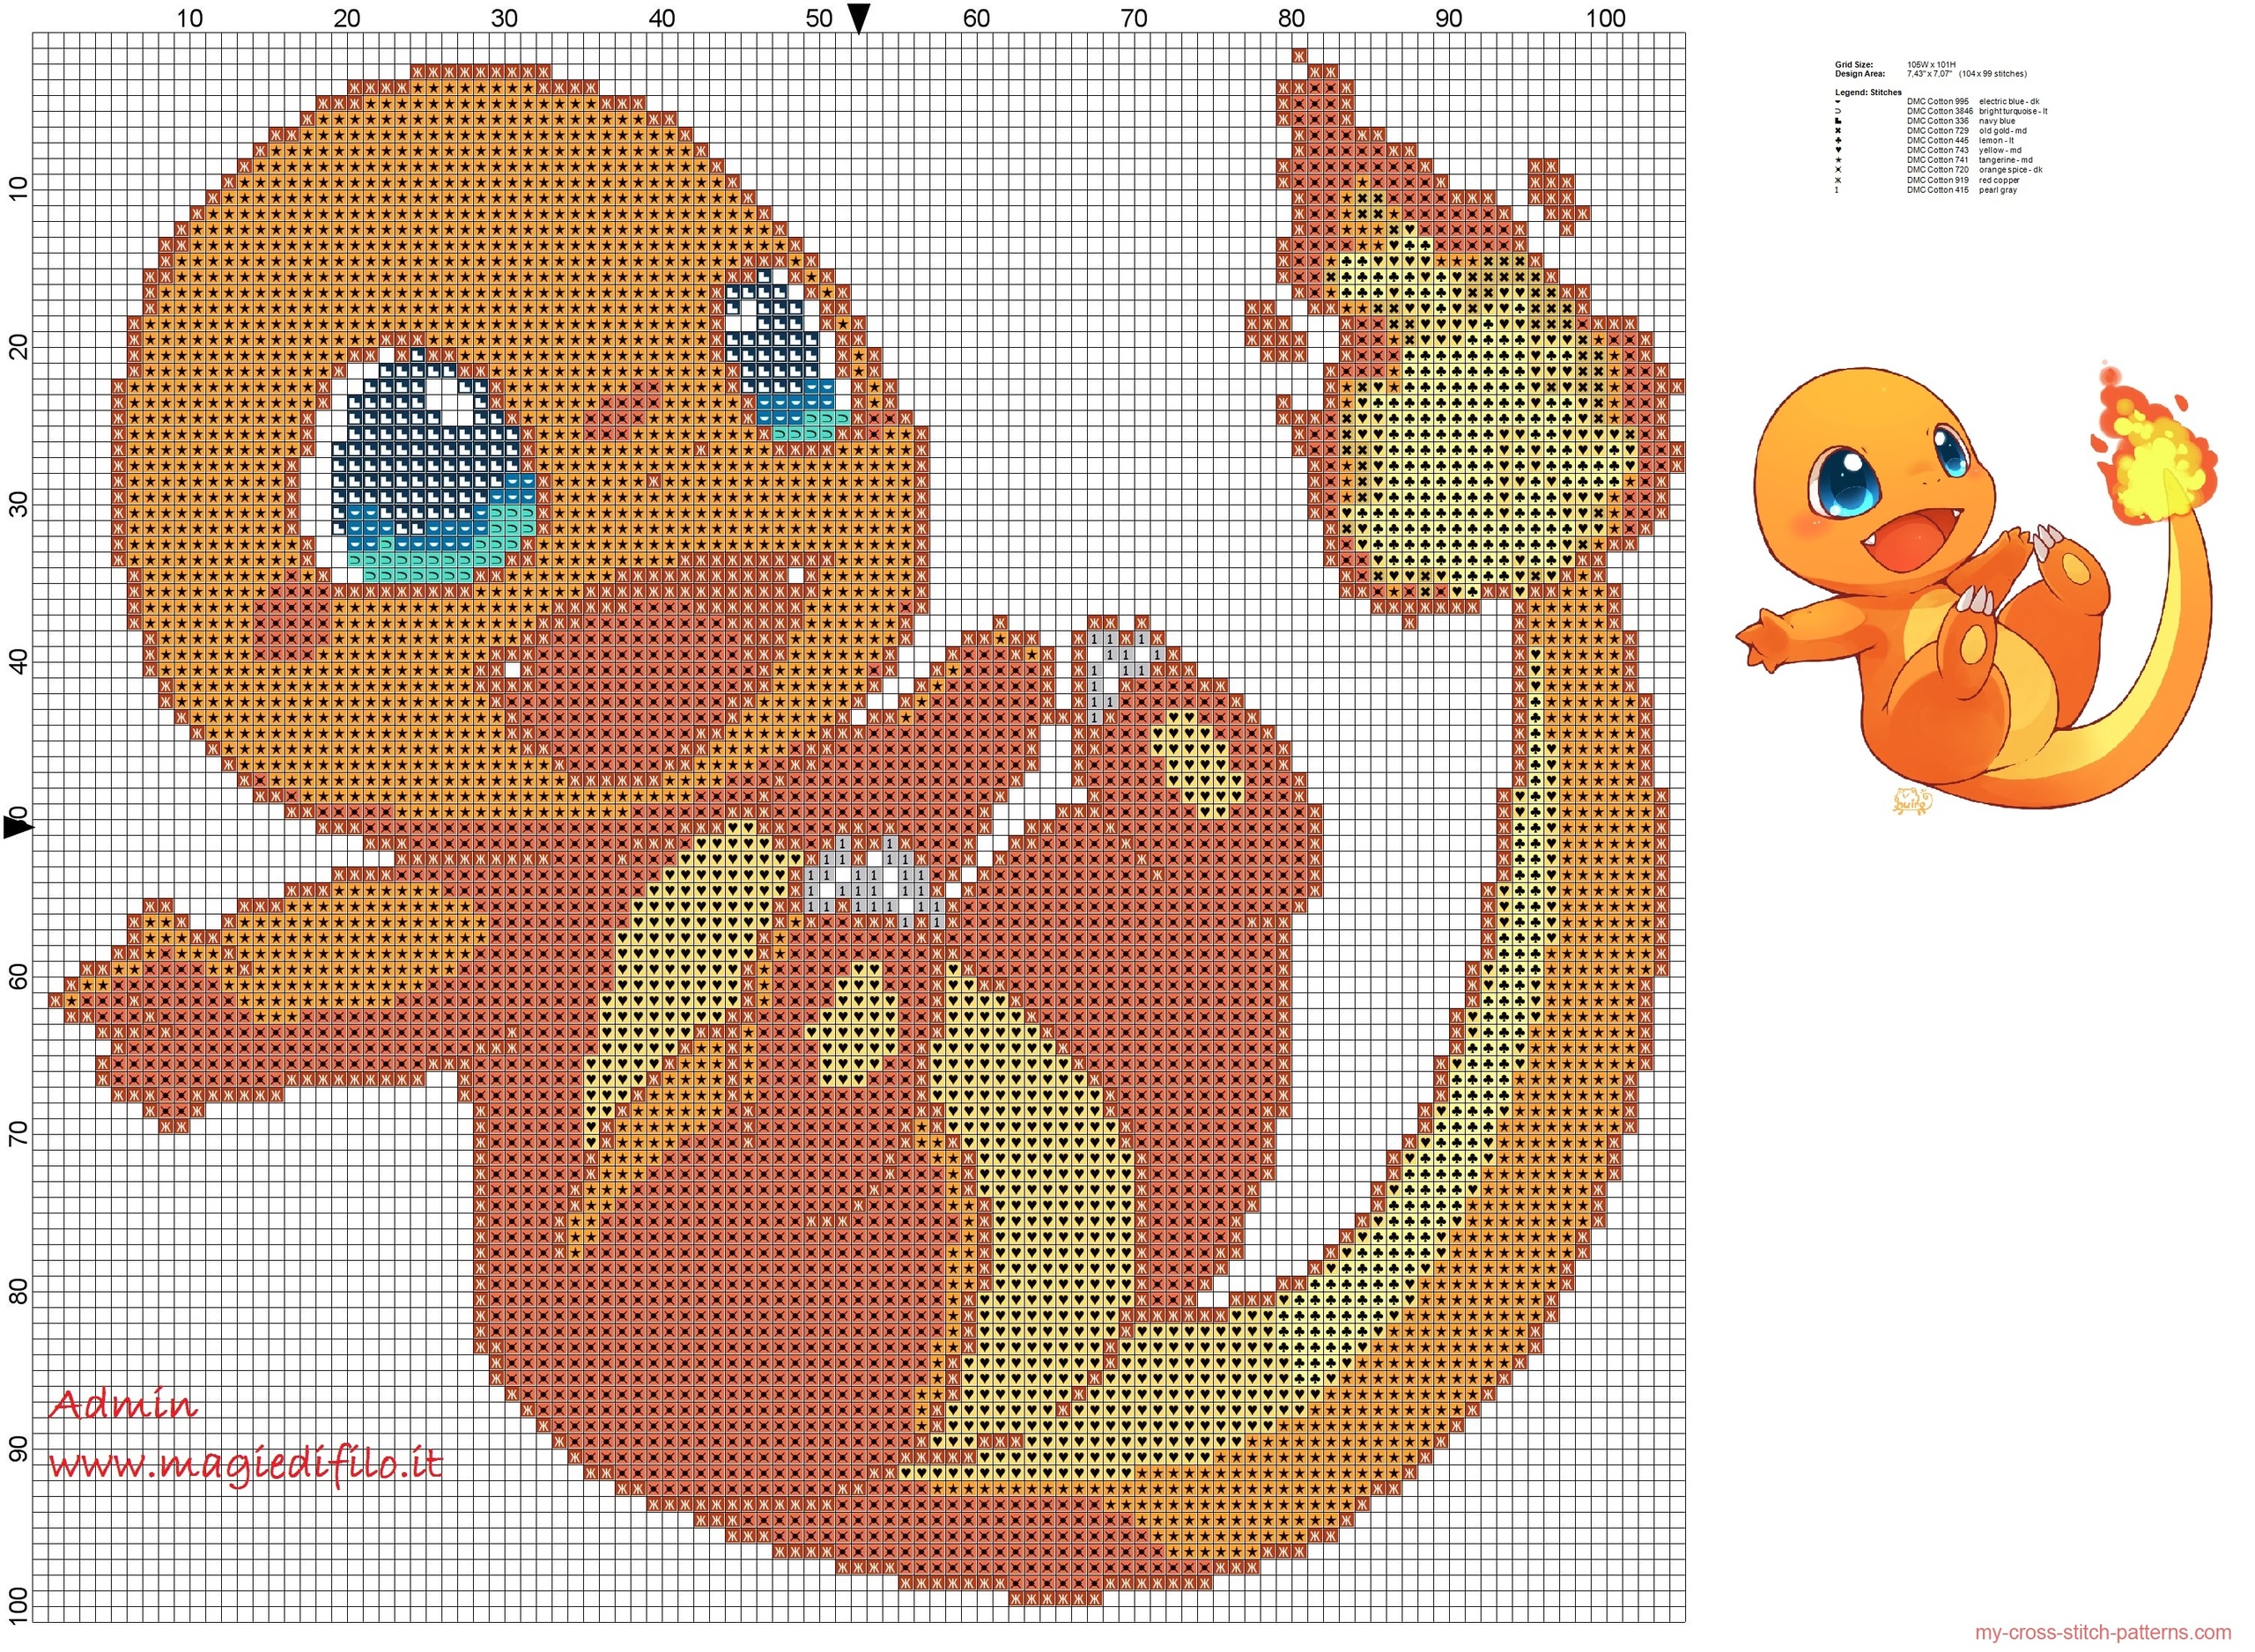 charmander_pokemon_004_cross_stitch_pattern_free